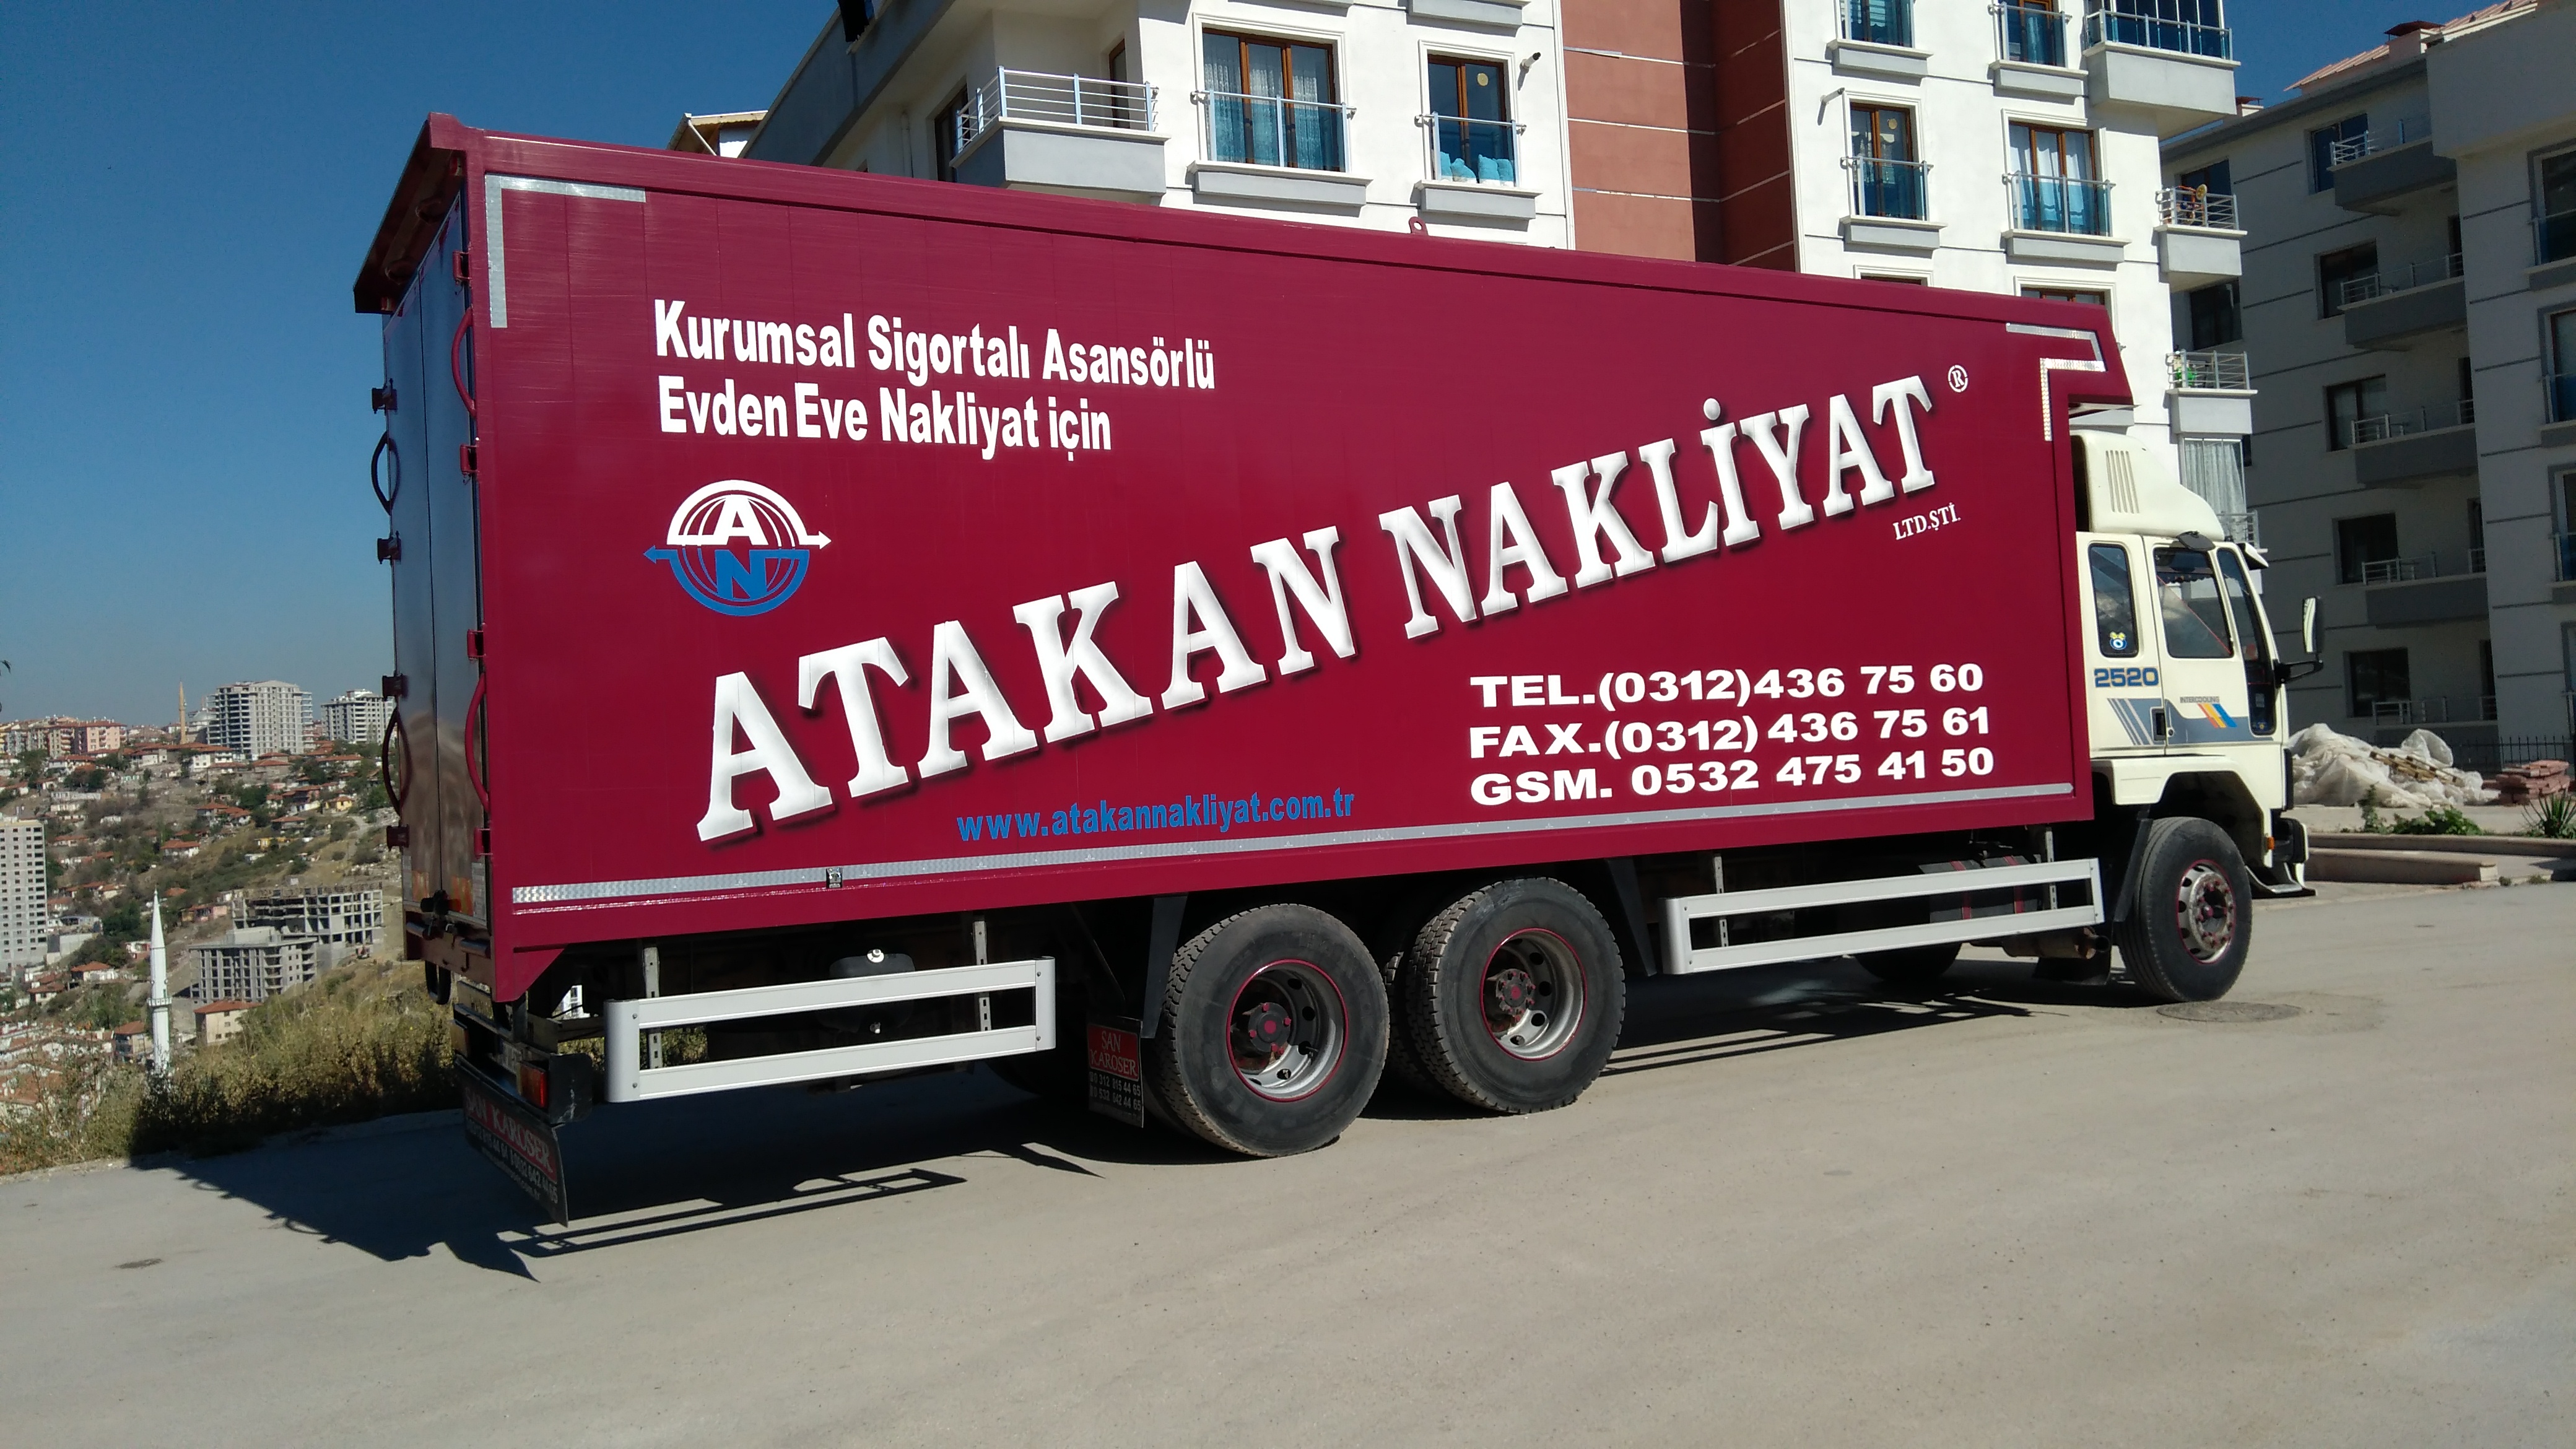 Ankara Söz Çankaya Evden Eve Nakliyat Firması